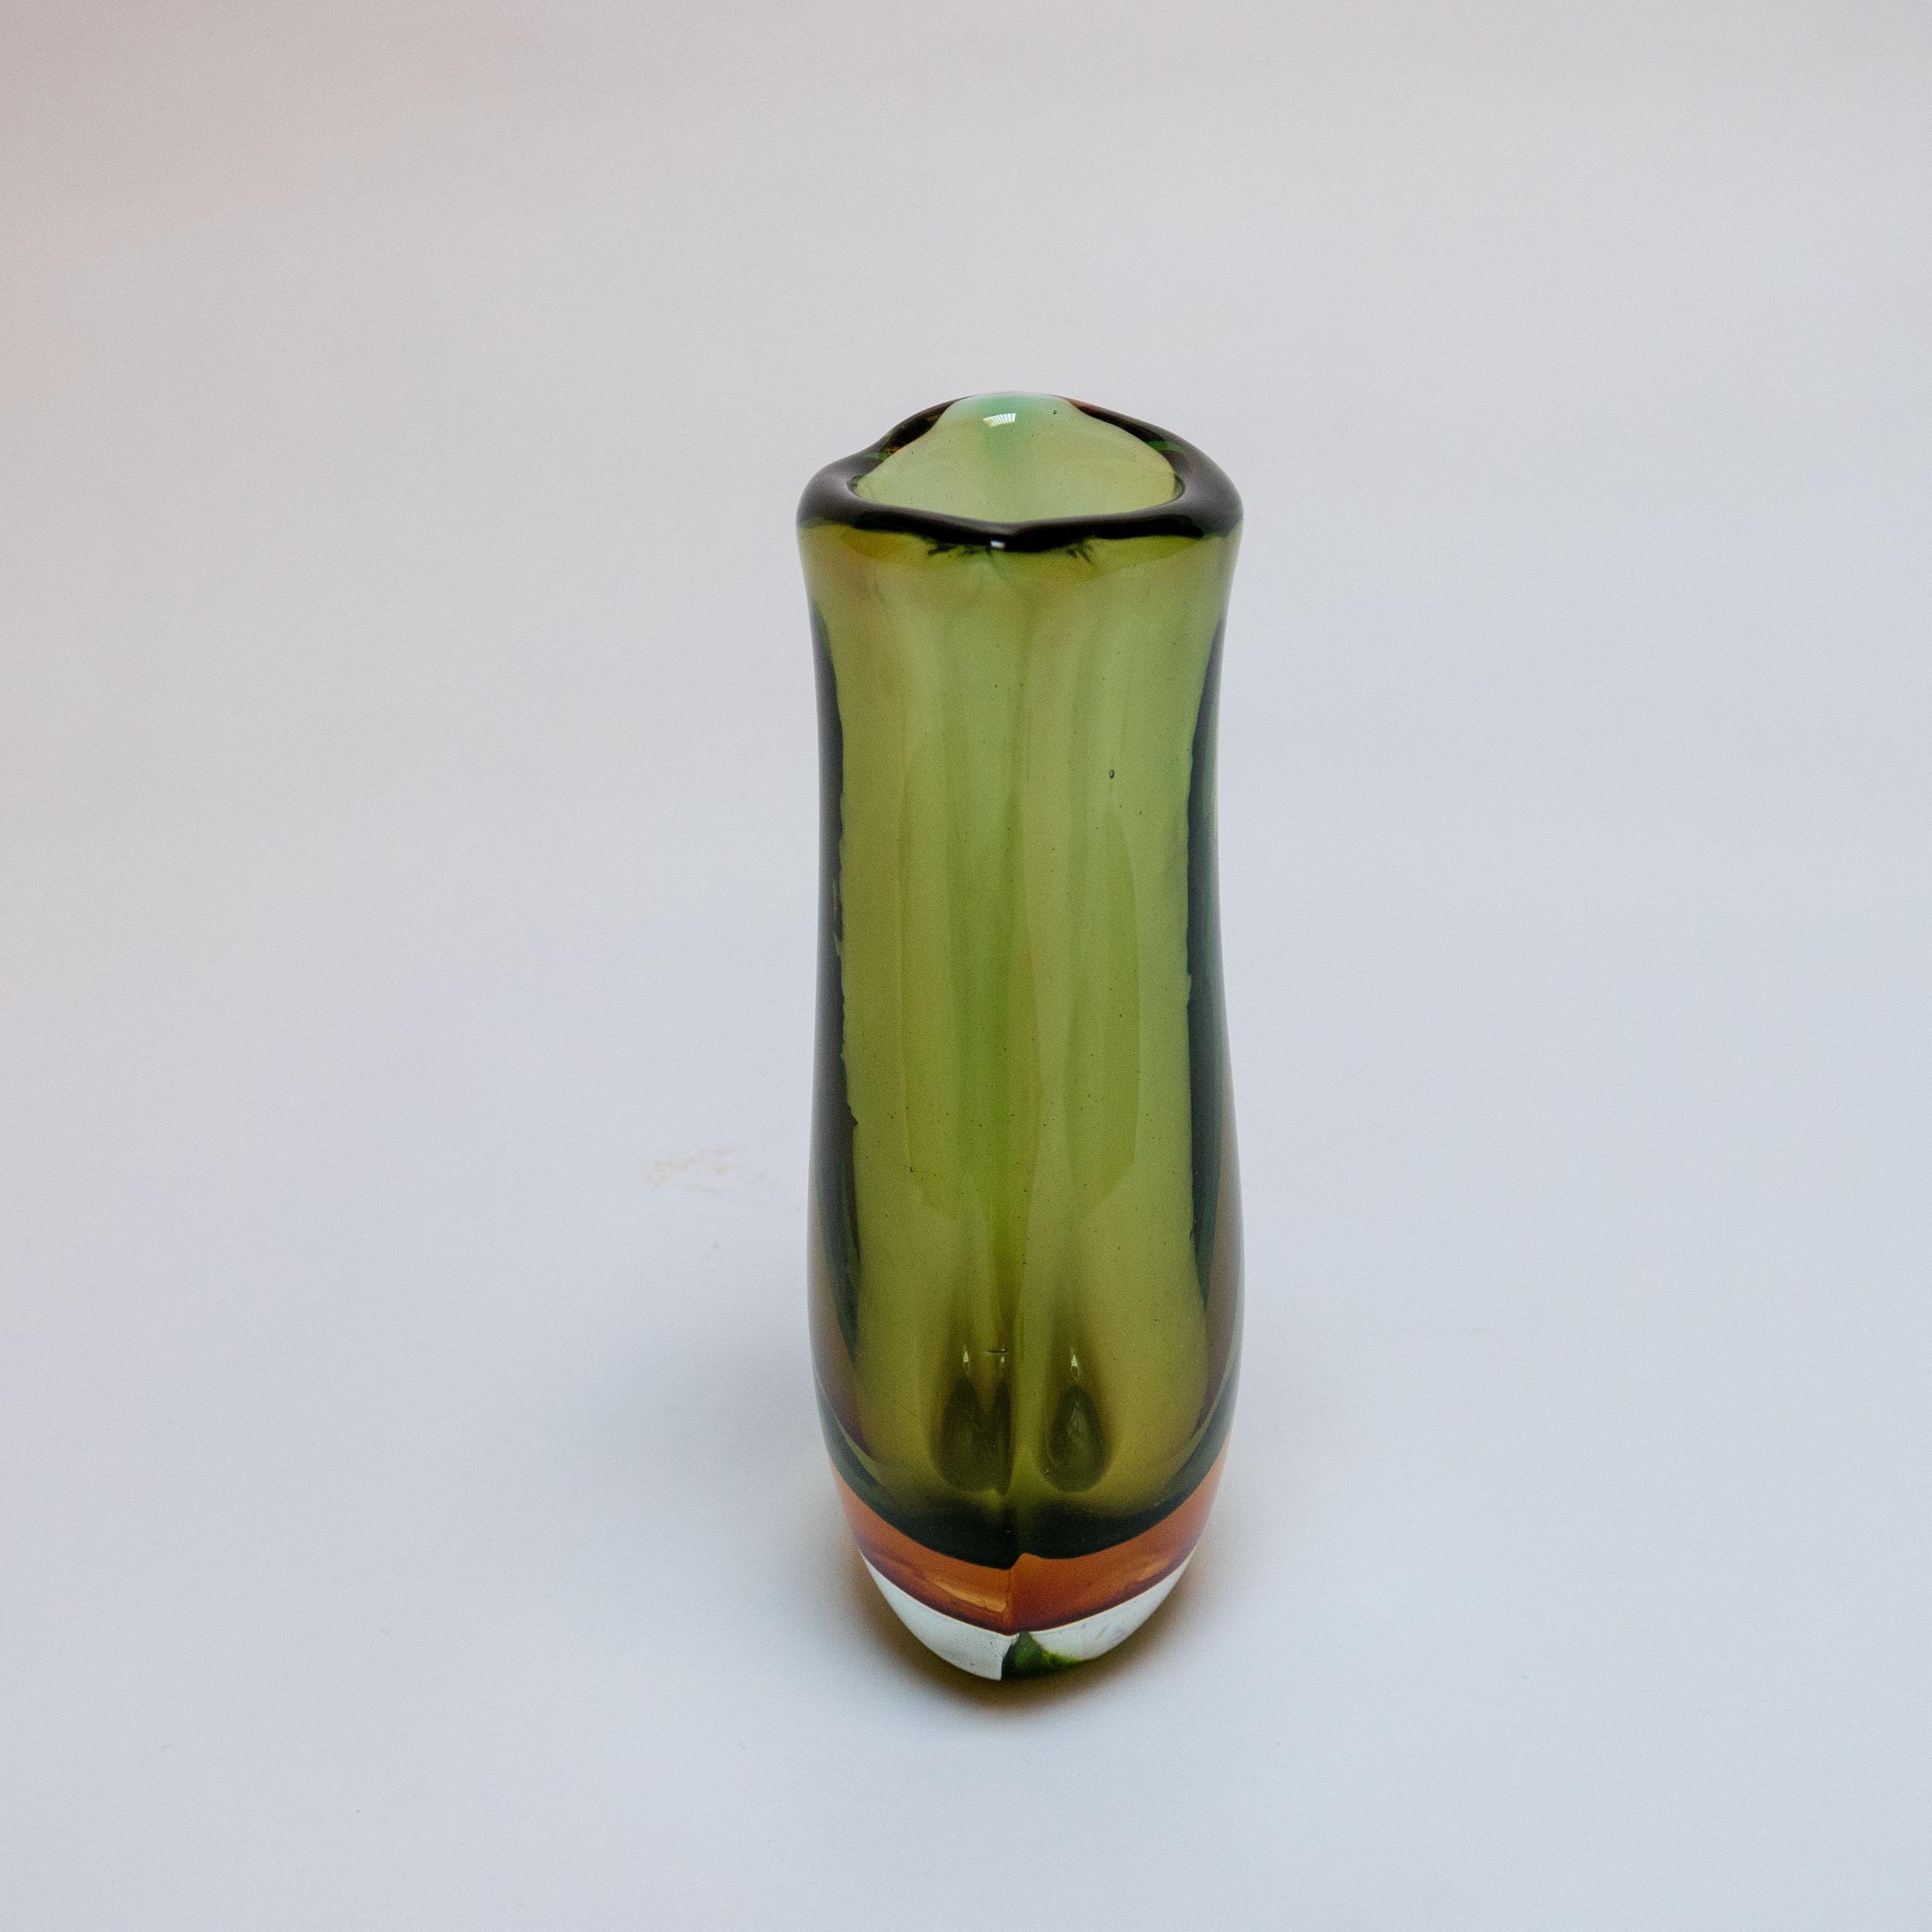 Nombreux sont les différents styles de verre créés sur l'île de Murano. Le verre soufflé, sculpté ou moulé est utilisé pour créer tout type d'objet, des bols et vases aux sculptures et lustres. La couleur peut alors apporter une touche